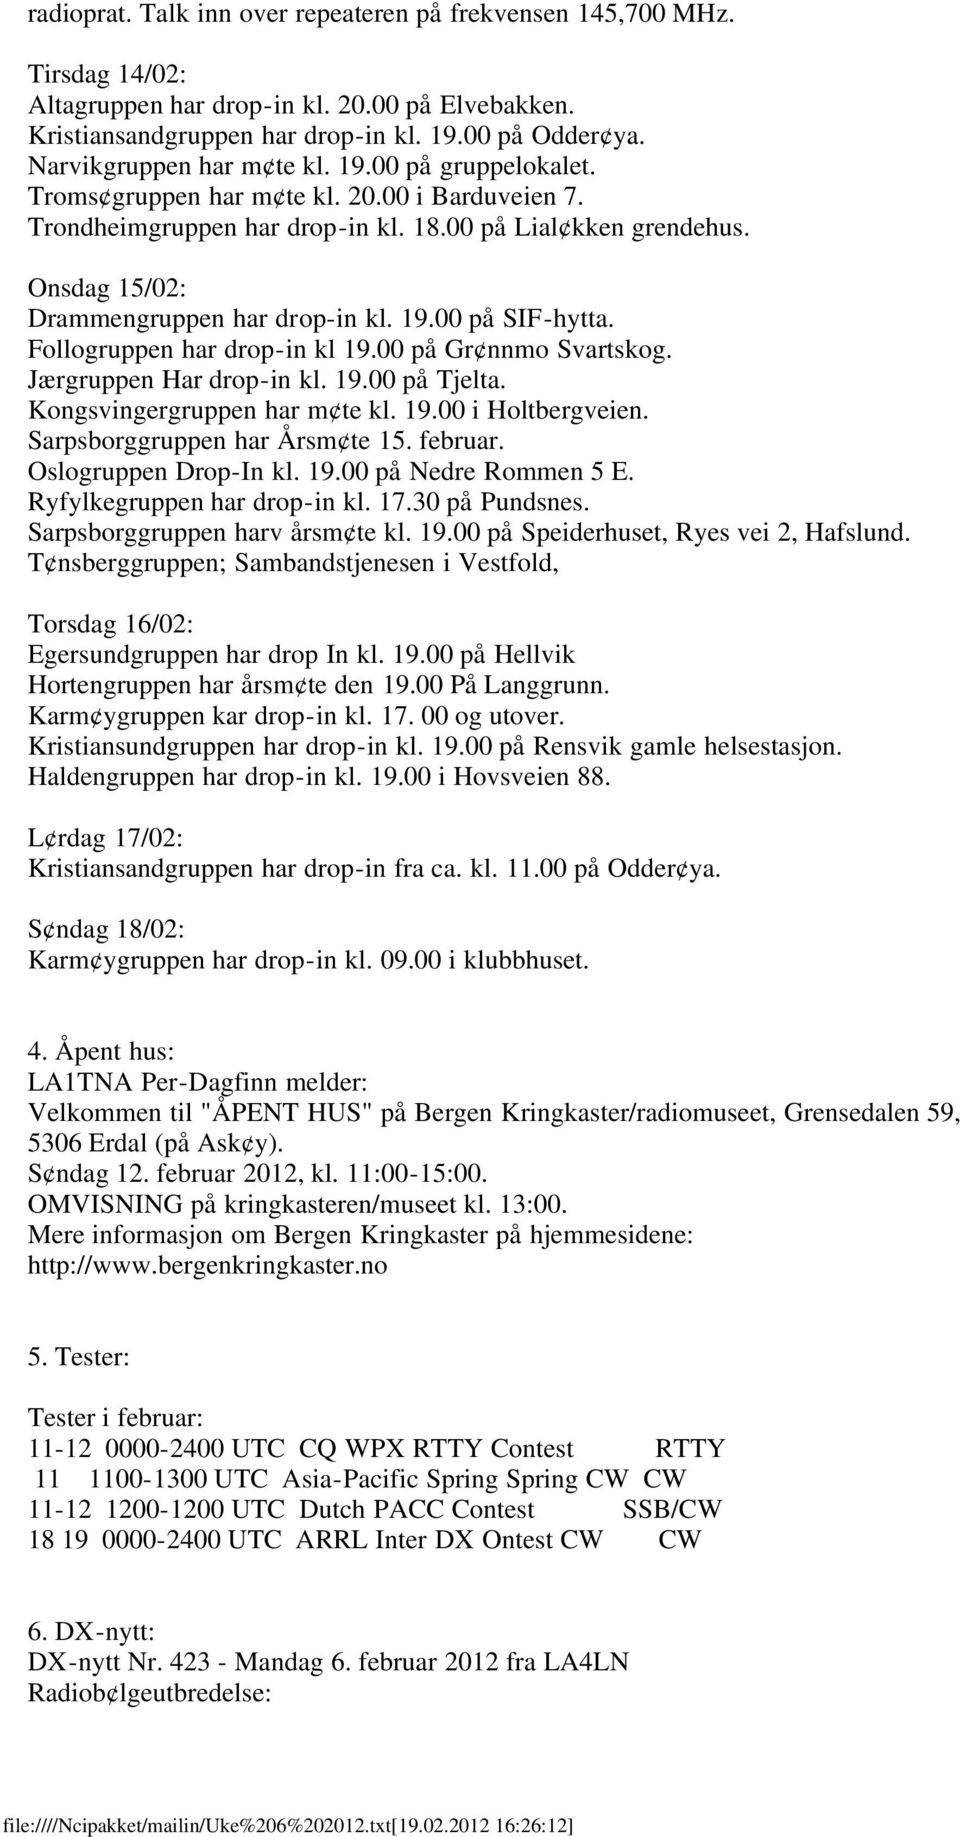 Onsdag 15/02: Drammengruppen har drop-in kl. 19.00 på SIF-hytta. Follogruppen har drop-in kl 19.00 på Gr nnmo Svartskog. Jærgruppen Har drop-in kl. 19.00 på Tjelta. Kongsvingergruppen har m te kl. 19.00 i Holtbergveien.